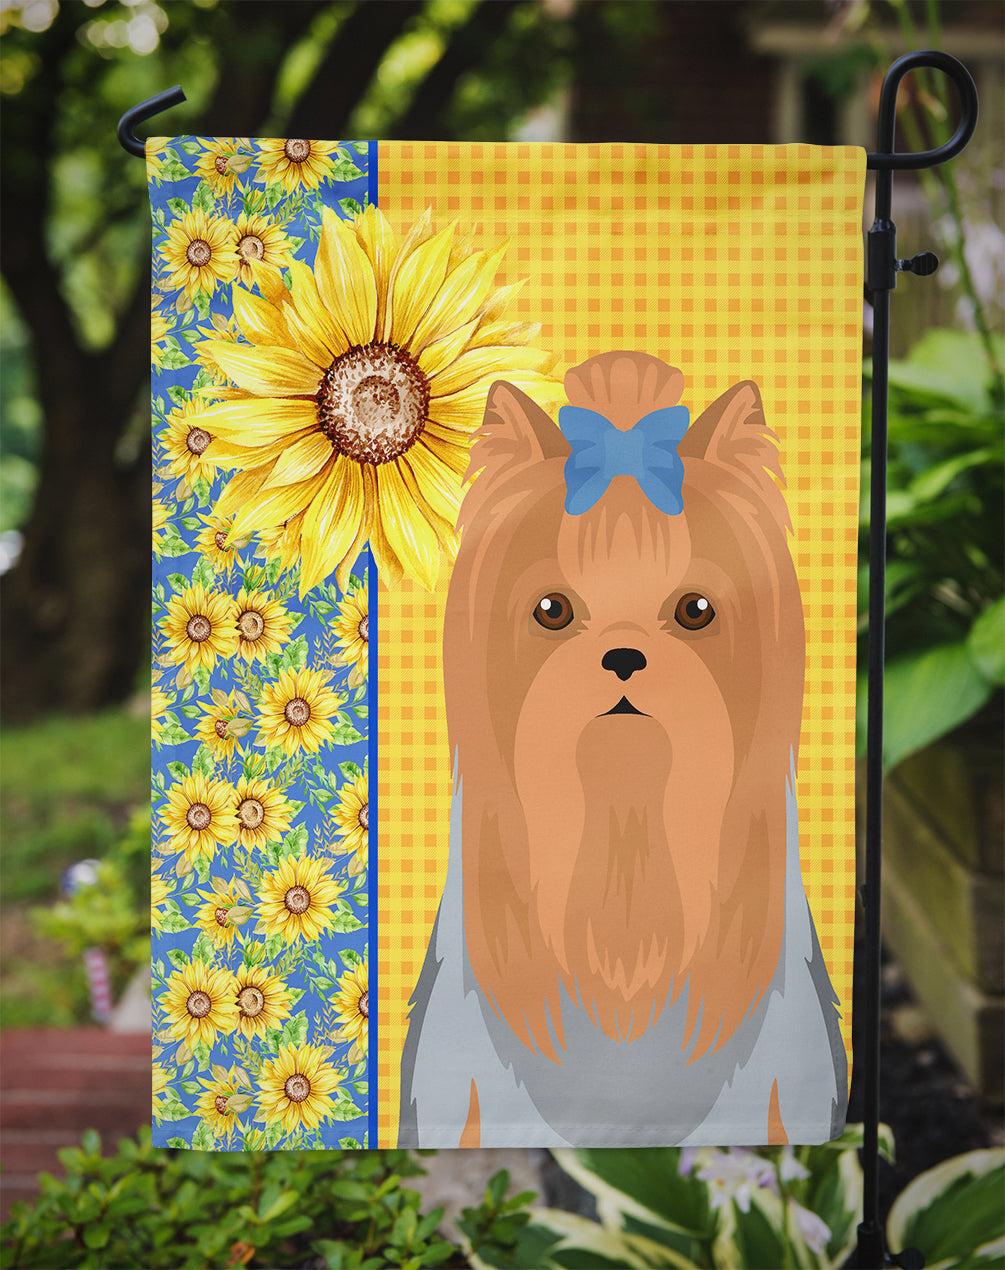 Summer Sunflowers Blue and Tan Full Coat Yorkshire Terrier Flag Garden Size